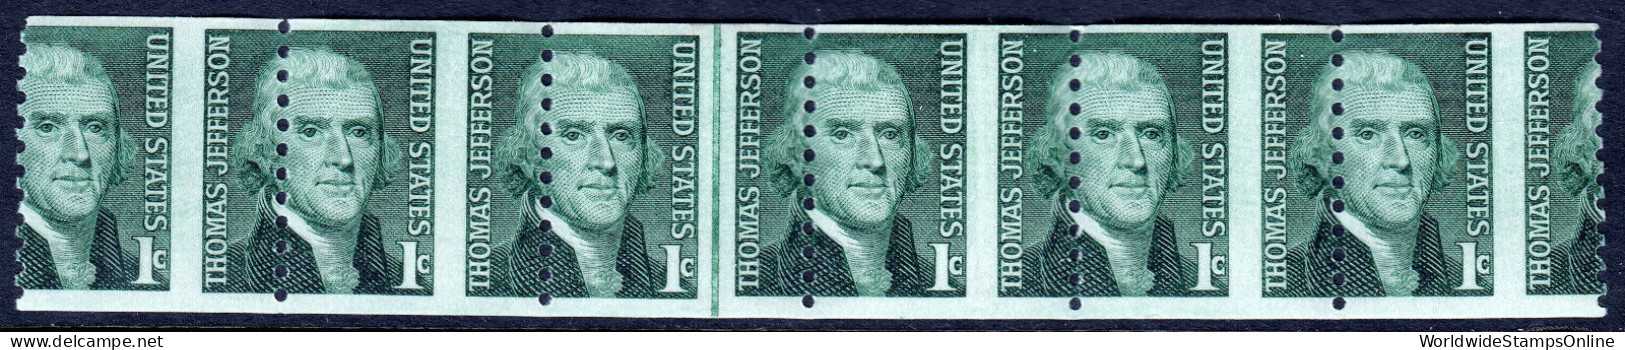 USA — SCOTT 1299 — 1¢ JEFFERSON COIL — LINE STRIP OF 6 - Plaatfouten En Curiosa